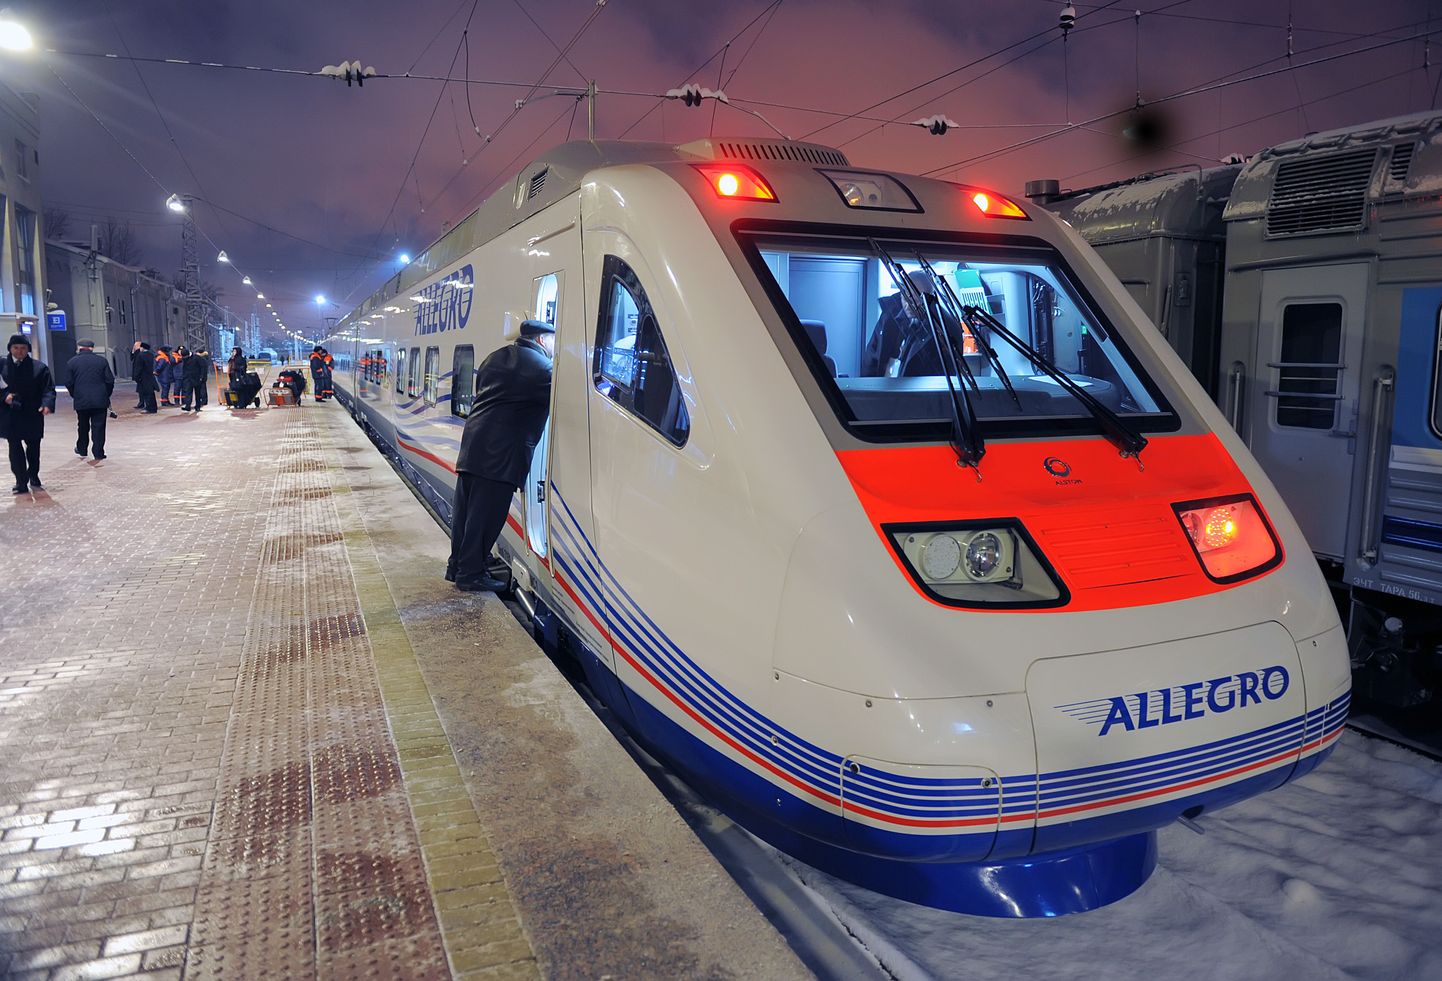 Kiirrong Allegro kurseerib Peterburi ja Helsingi vahel.